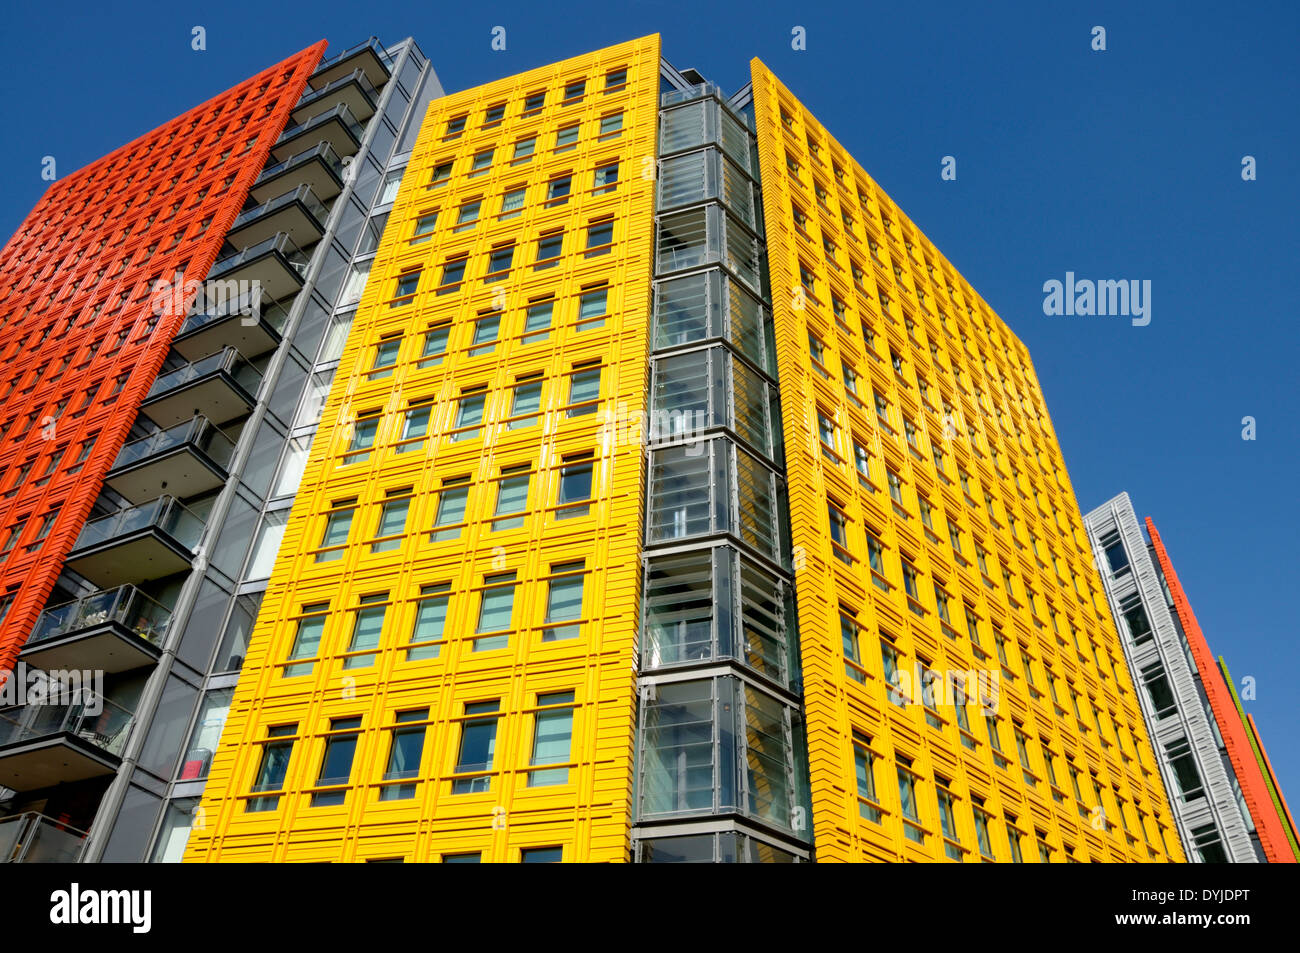 Londres, Inglaterra, Reino Unido. Central; St Giles - edificios de oficinas / restaurantes (Renzo Piano) en el St Giles High Street, Camden. Foto de stock